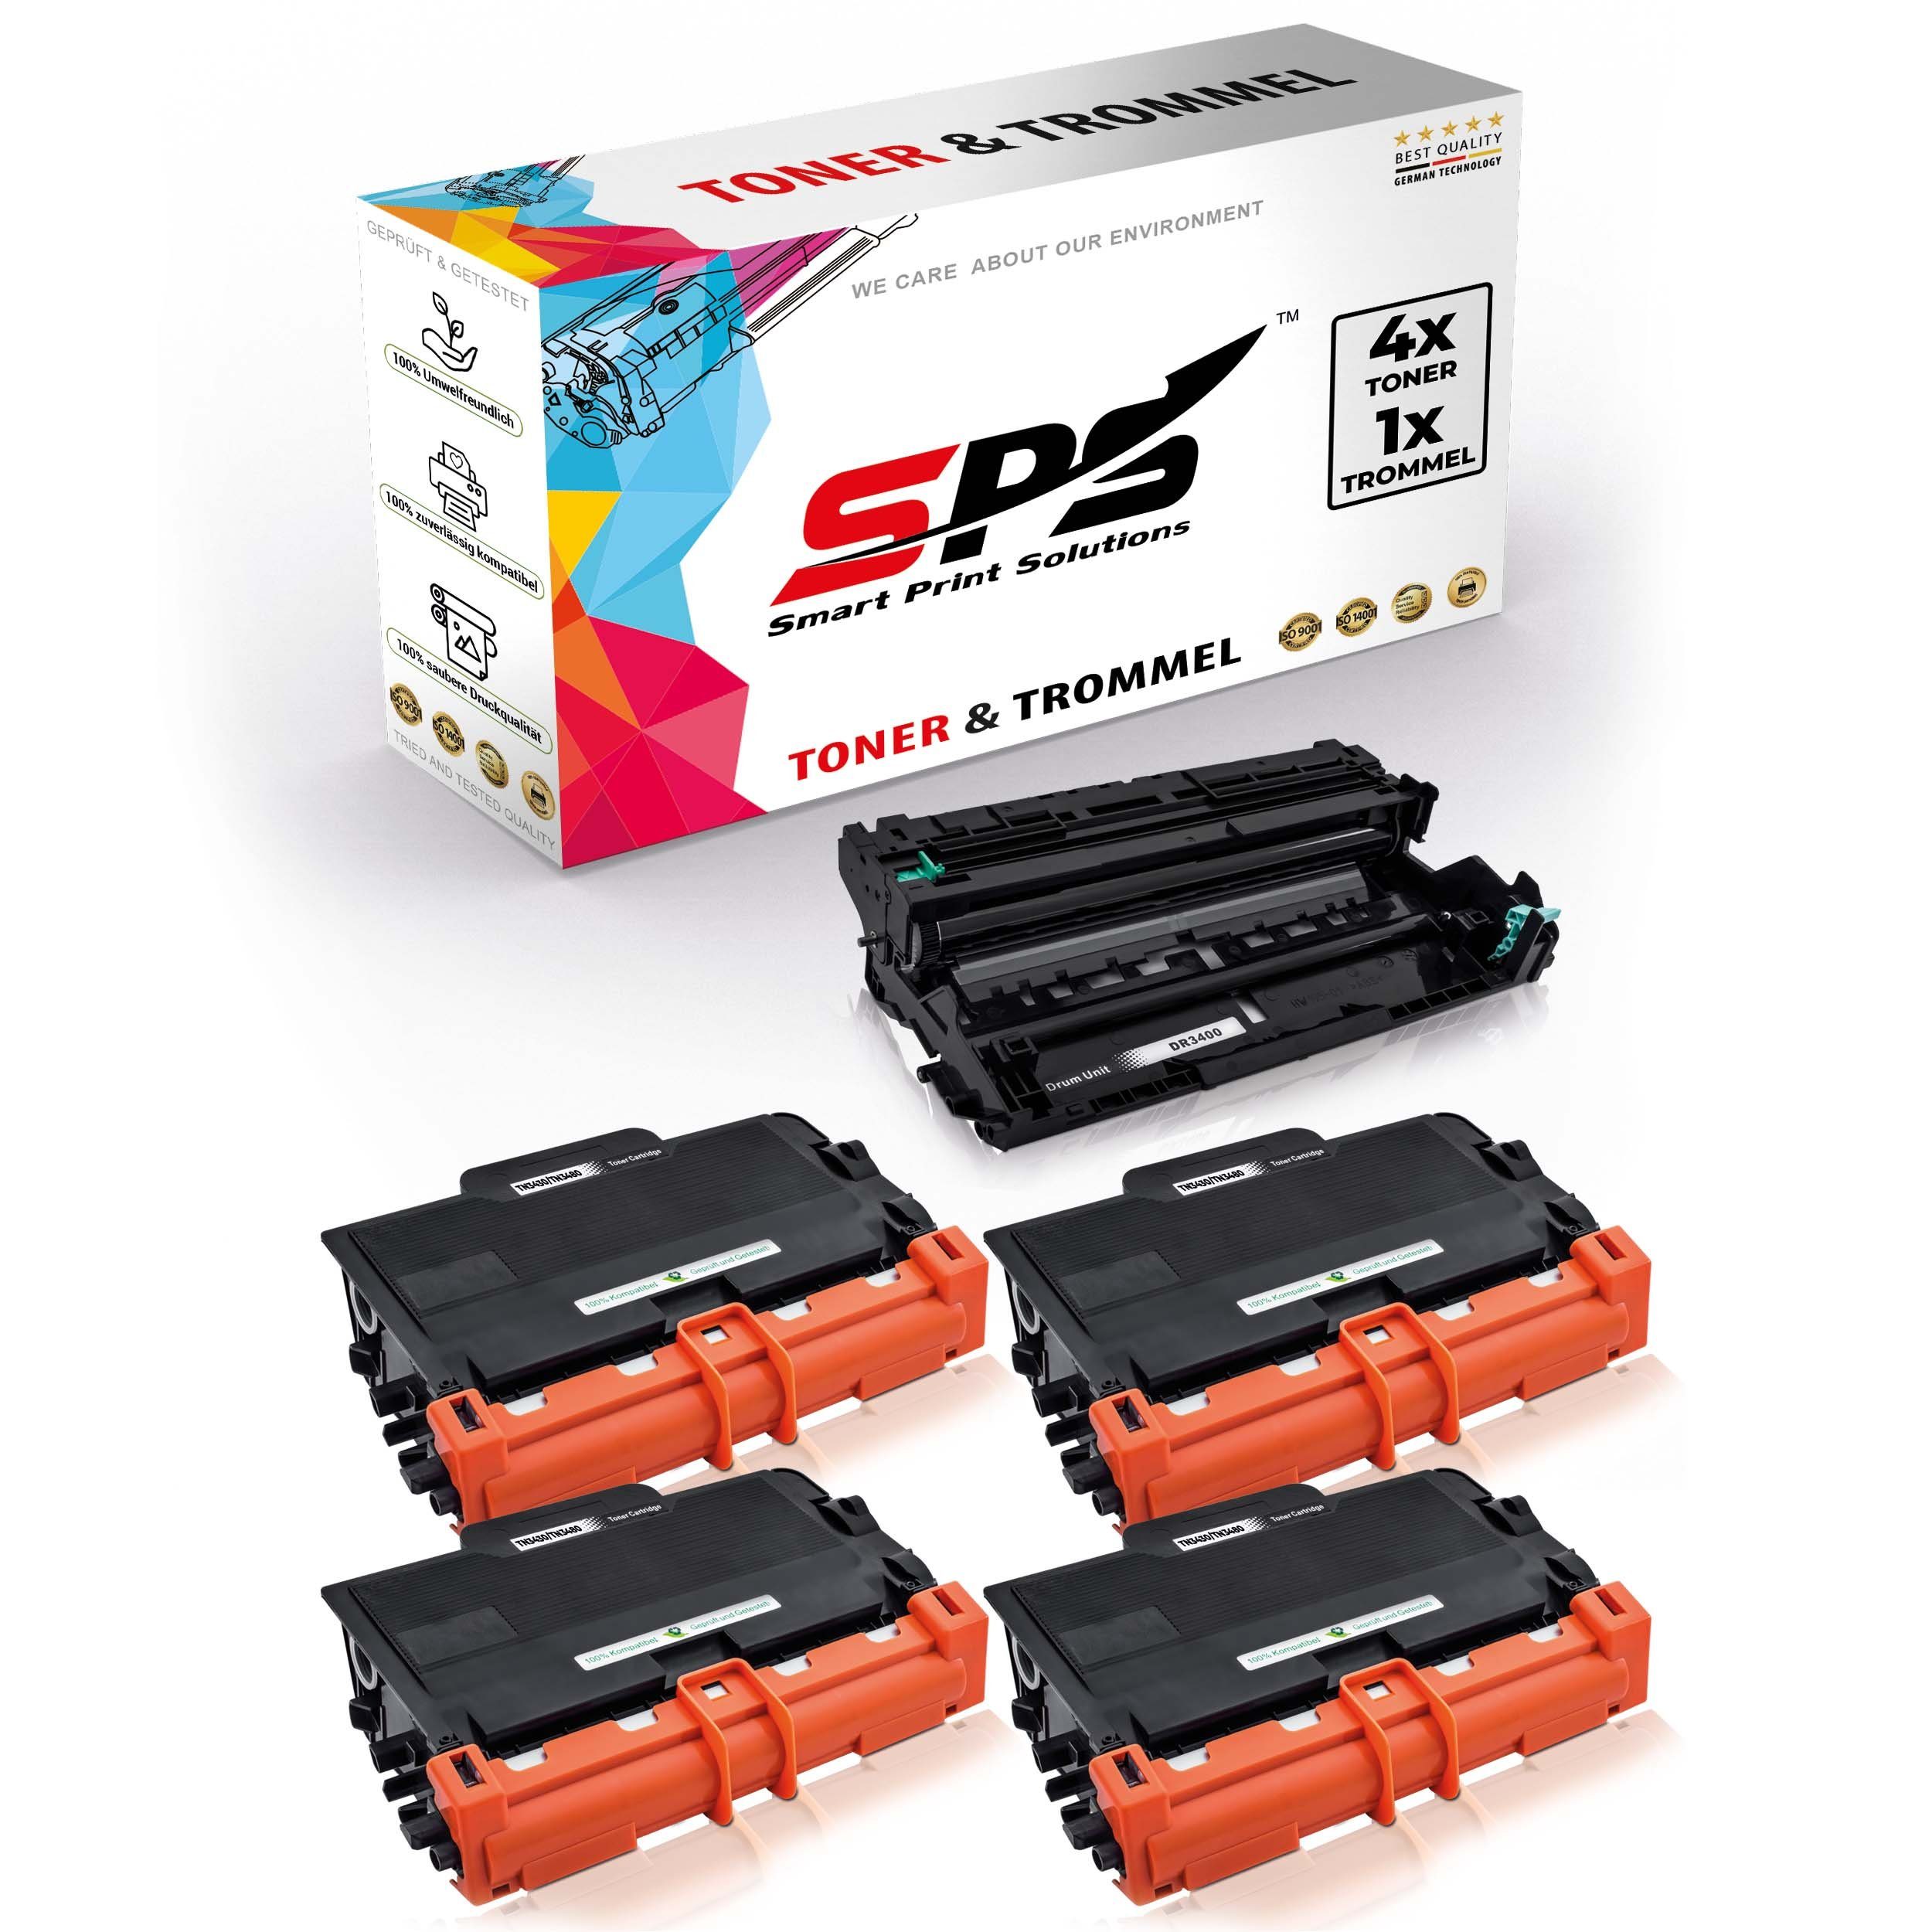 SPS Tonerkartusche Kompatibel für Brother HL-L5200DW DR-3400 TN-3430, (5er Pack)